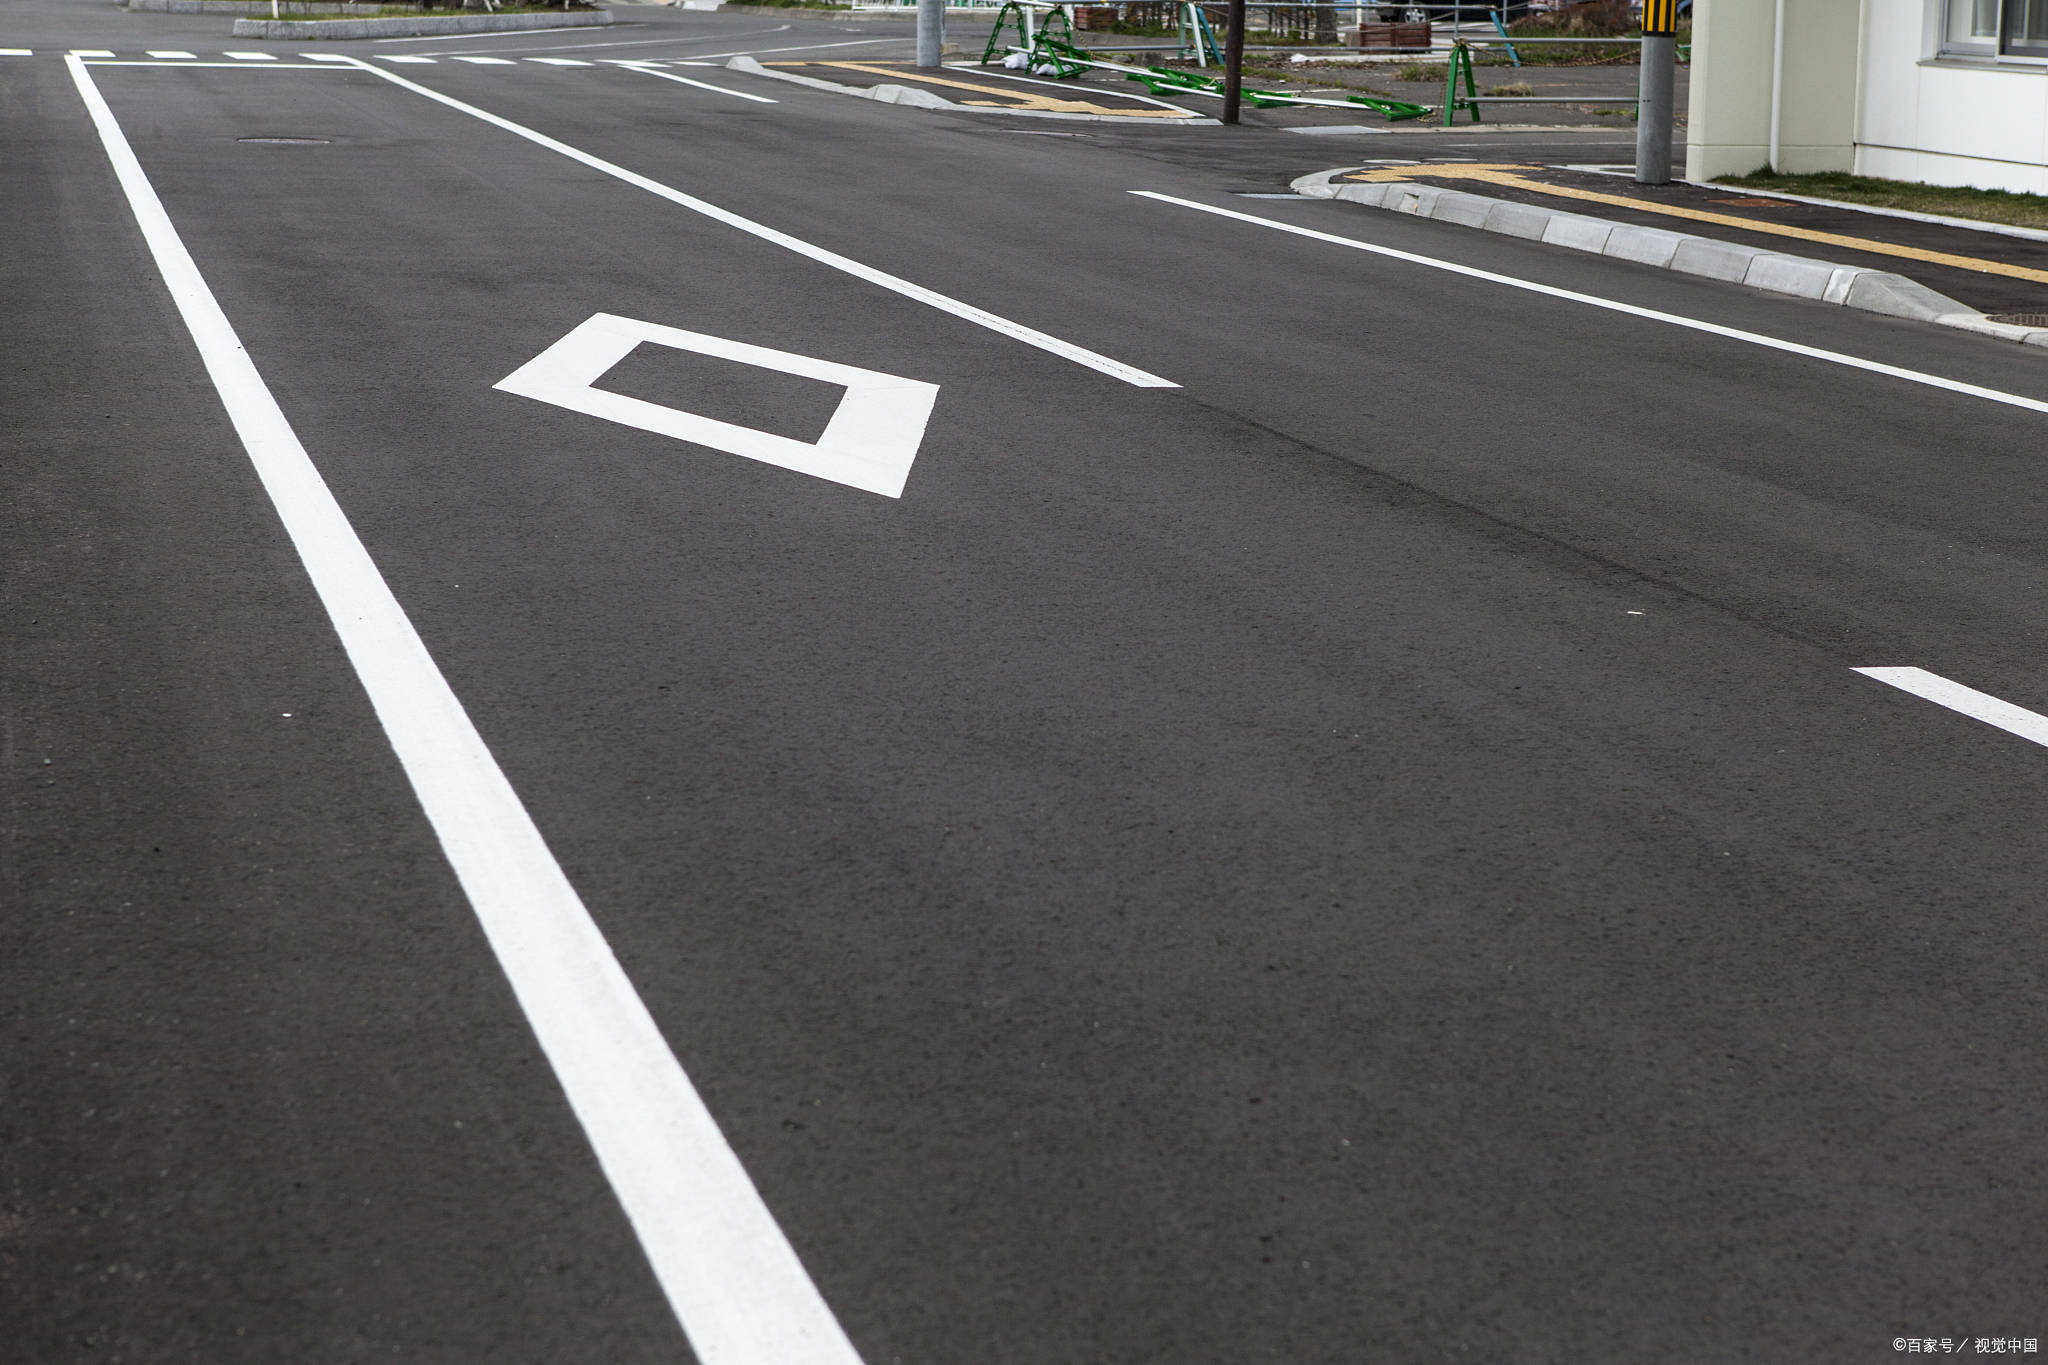 人行横道前的菱形标线是交通标志的一种,也被称为斑马线或人行道